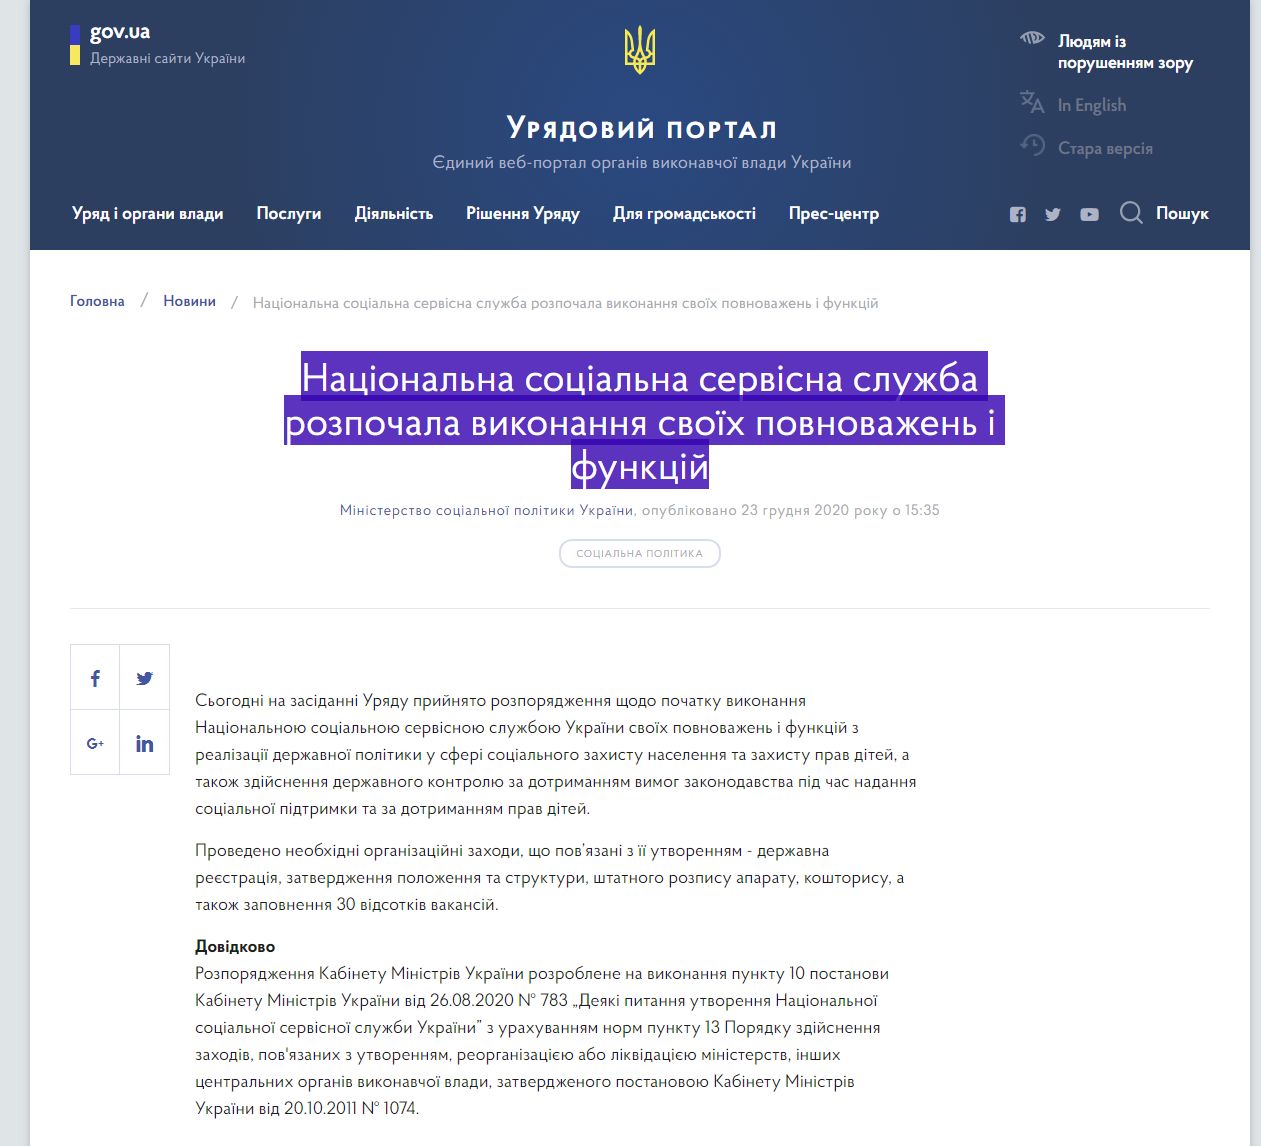 https://www.kmu.gov.ua/news/nacionalna-socialna-servisna-sluzhba-rozpochala-vikonannya-svoyih-povnovazhen-i-funkcij